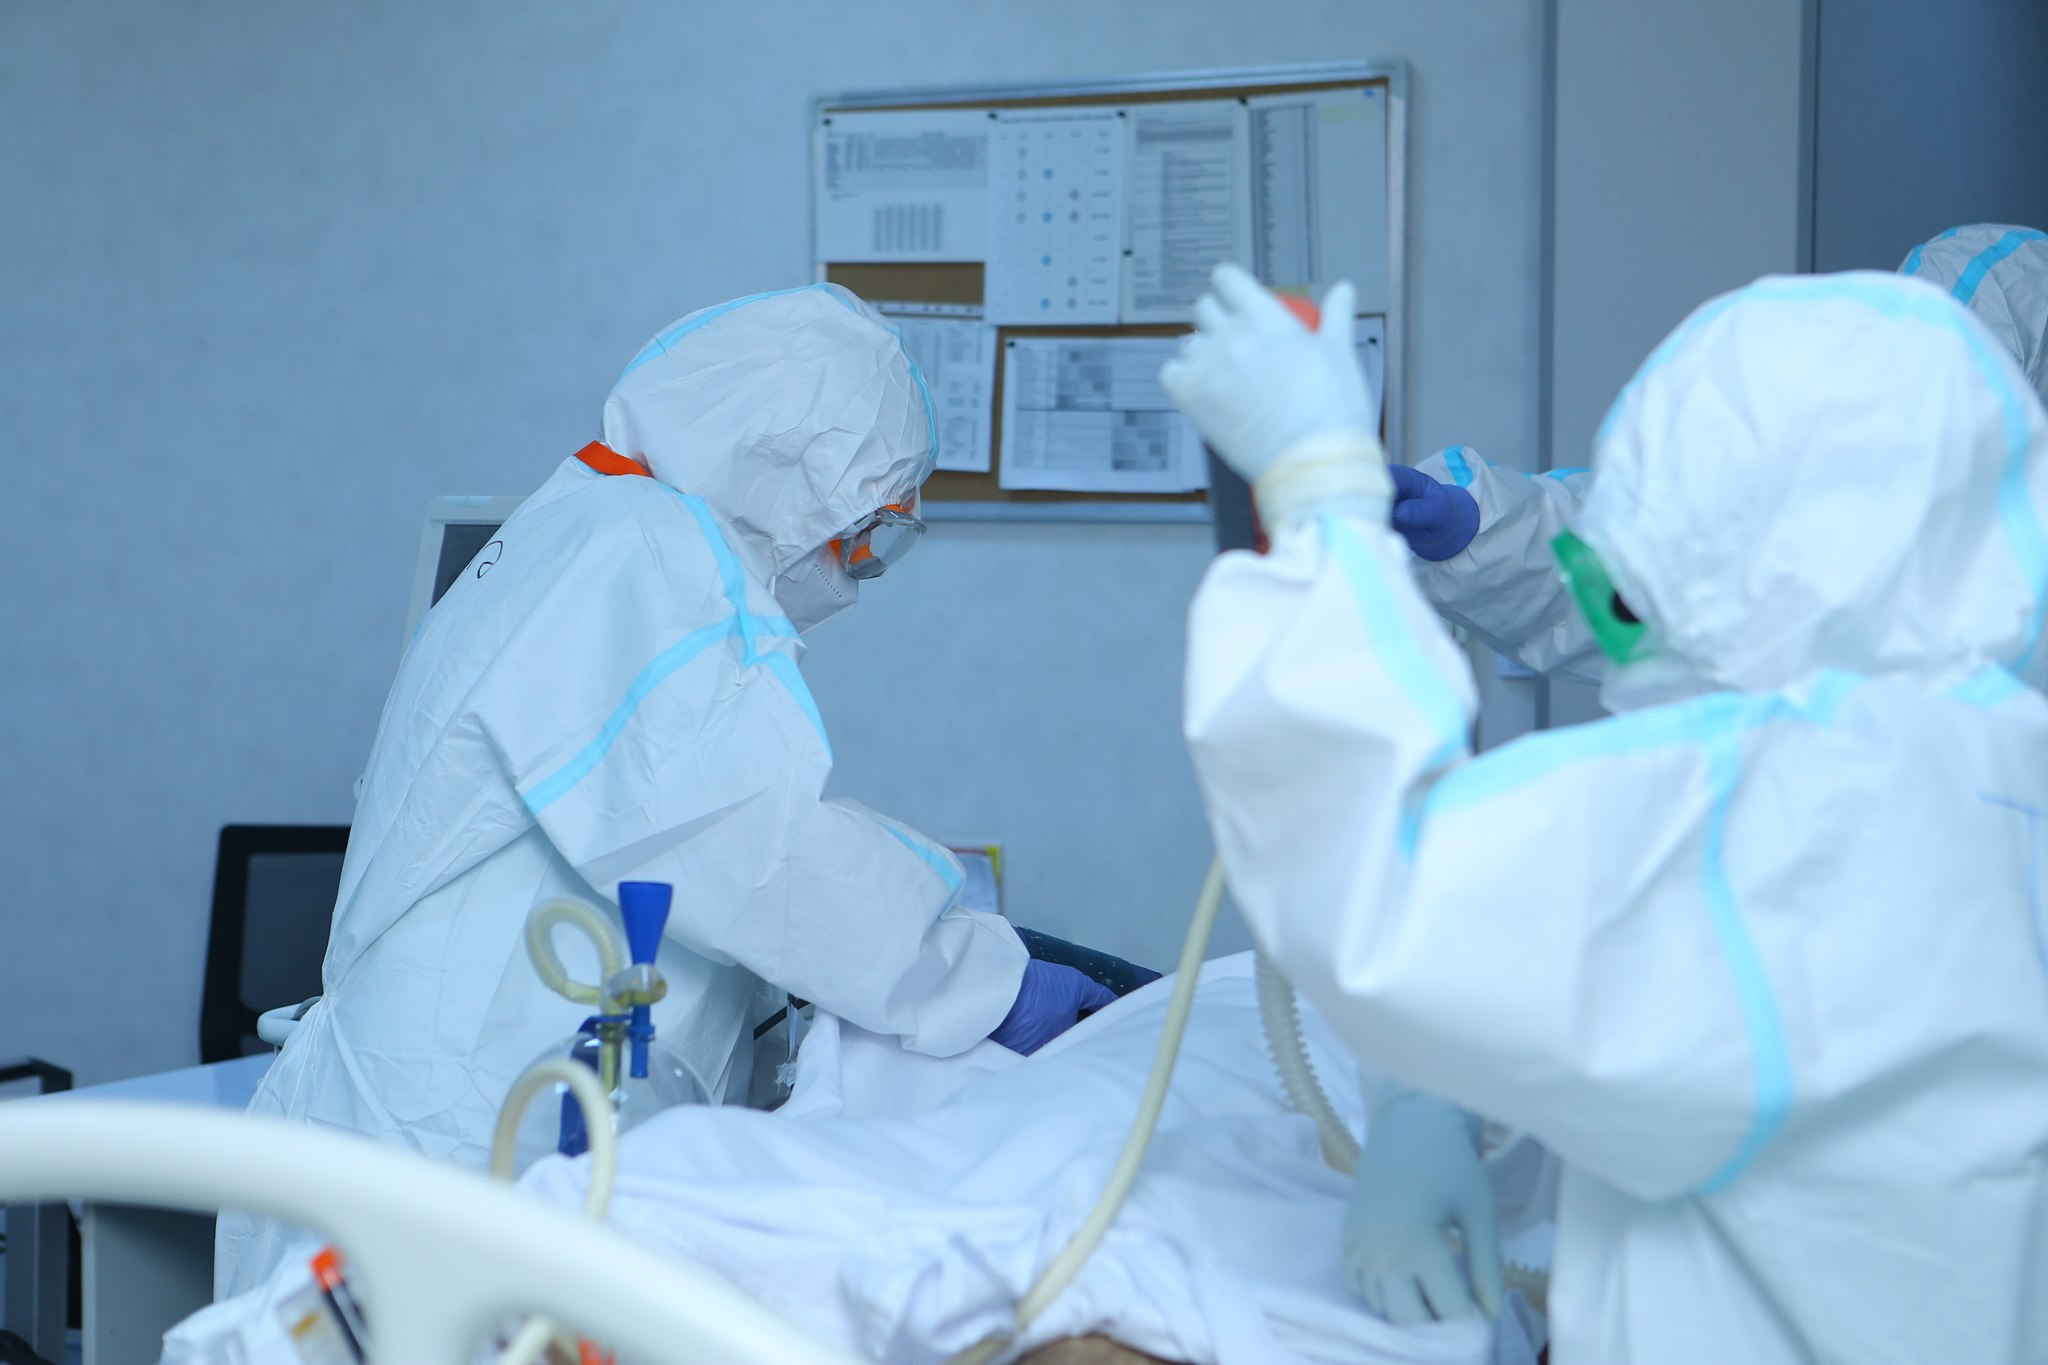 Azərbaycanda daha 7 779 nəfər koronavirusa yoluxub, 28 nəfər ölüb